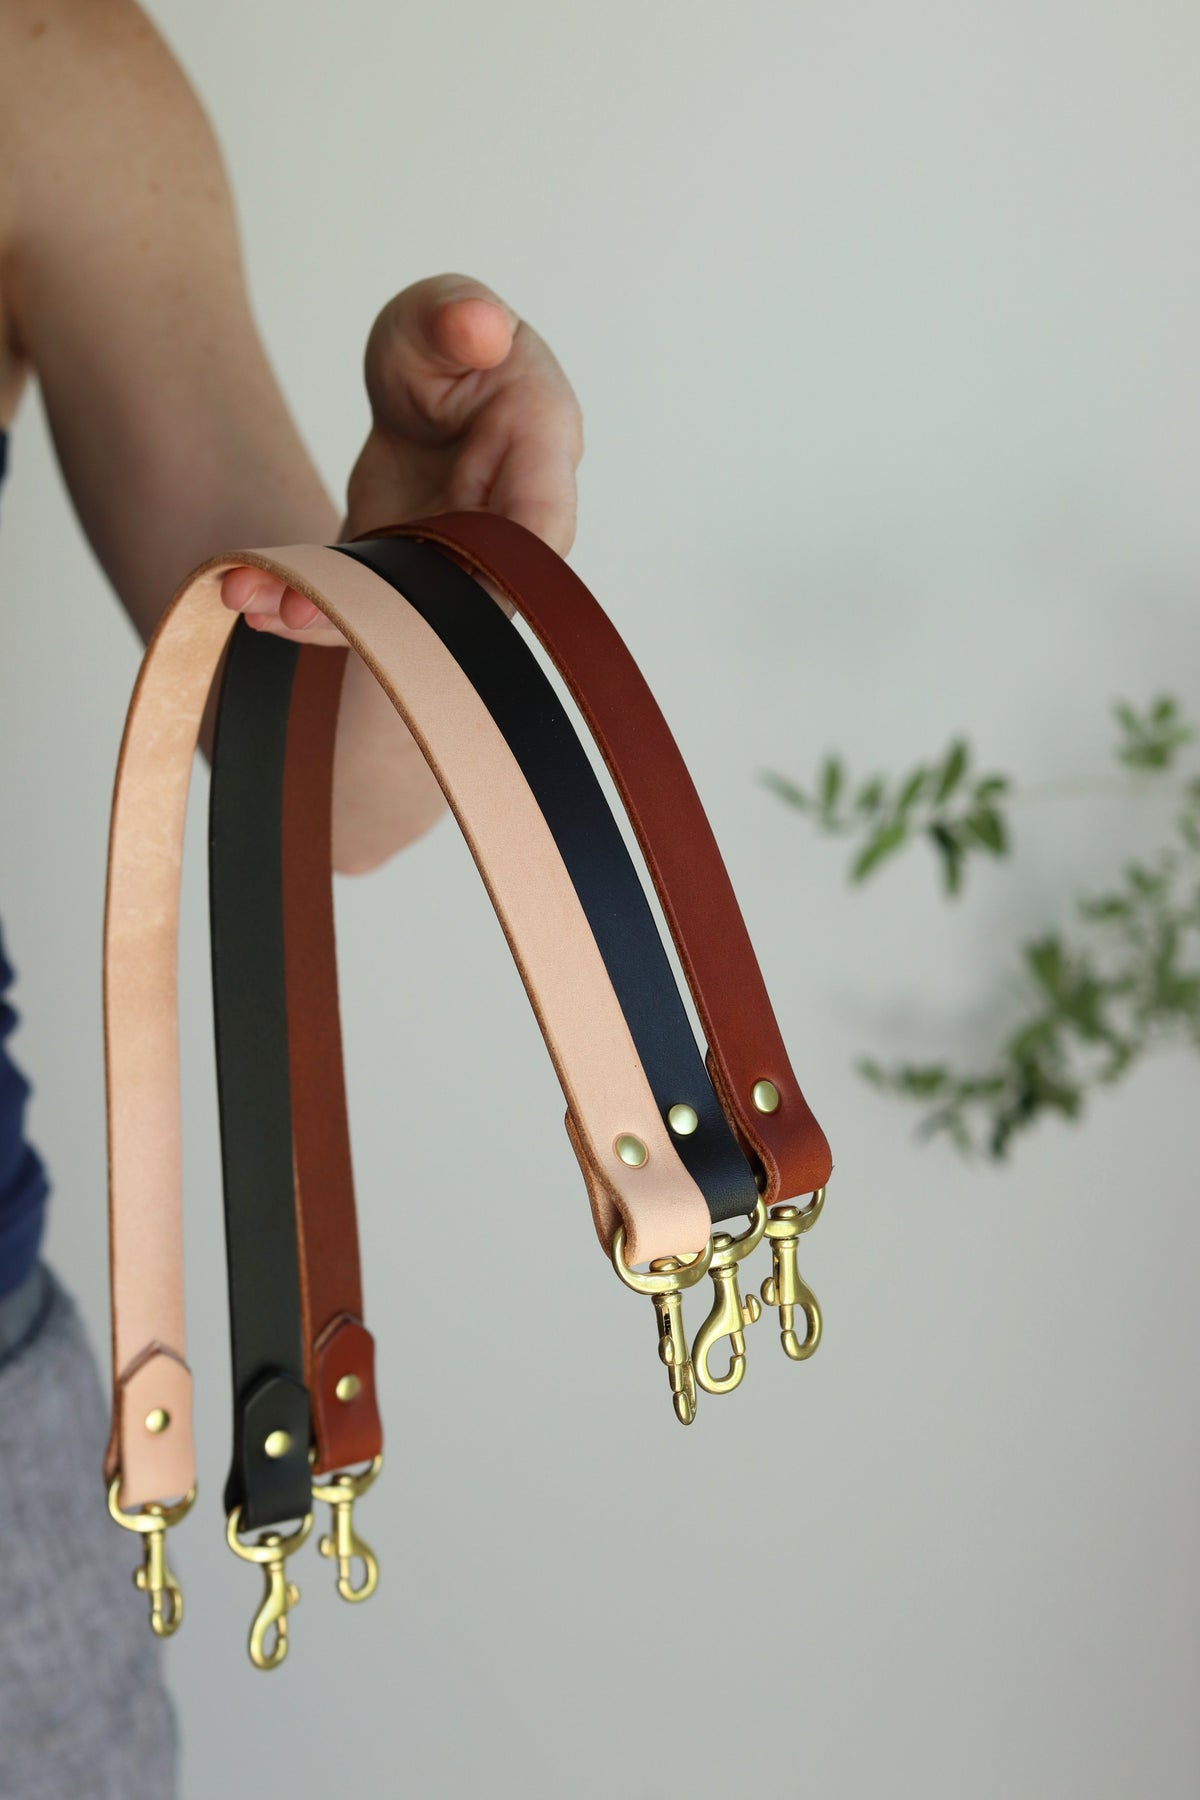 Smrinog Adjustable Bag Straps Nylon Wide Shoulder Belt Replacement Handbag  Purse Straps